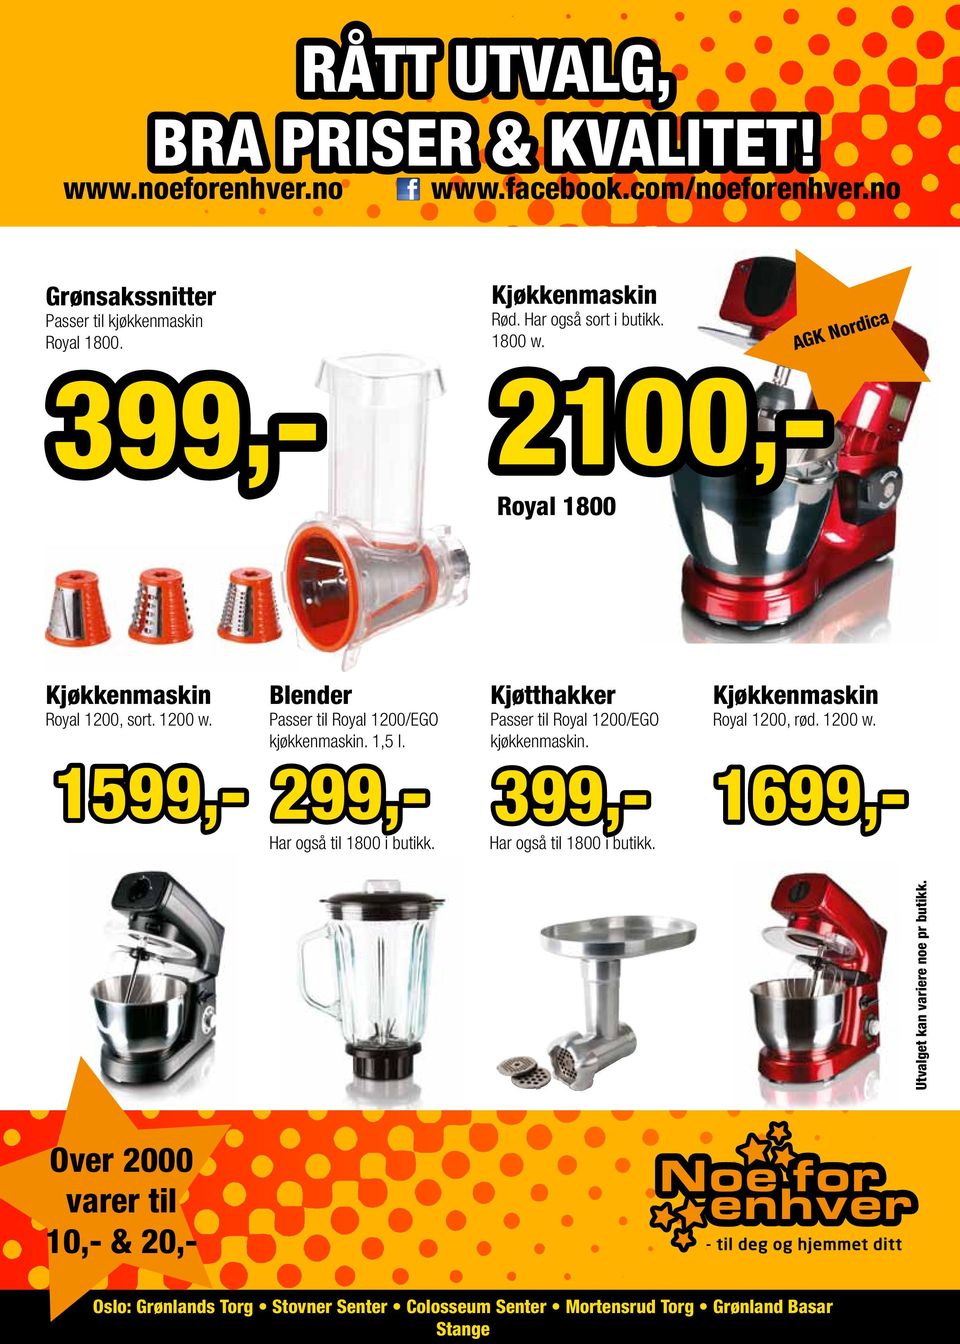 AGK Nordica 399,- 1699,- 2100,- Royal 1800 Kjøkkenmaskin Royal 1200, sort. 1200 w.